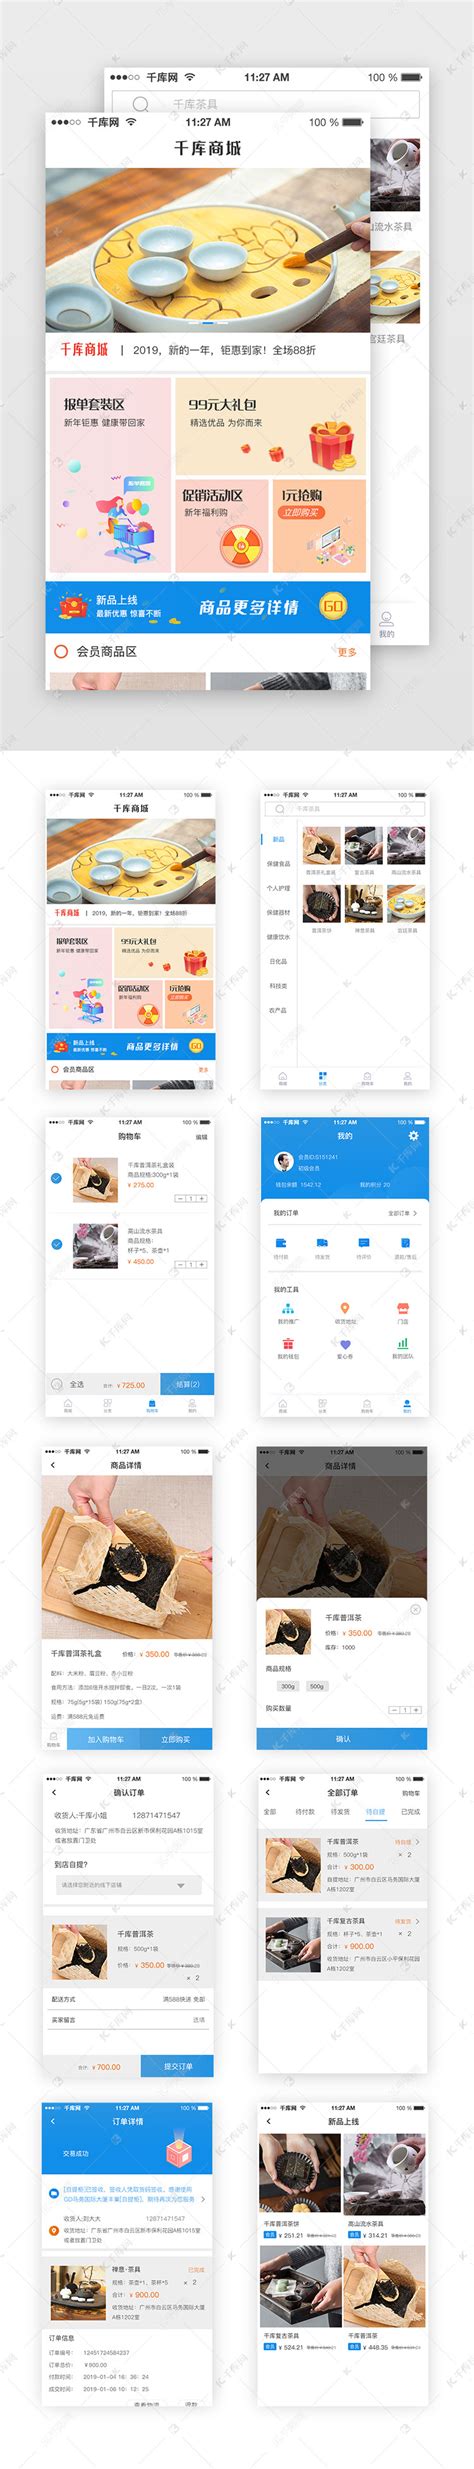 蓝色简约商城app电商购物UI综合页面ui界面设计素材-千库网